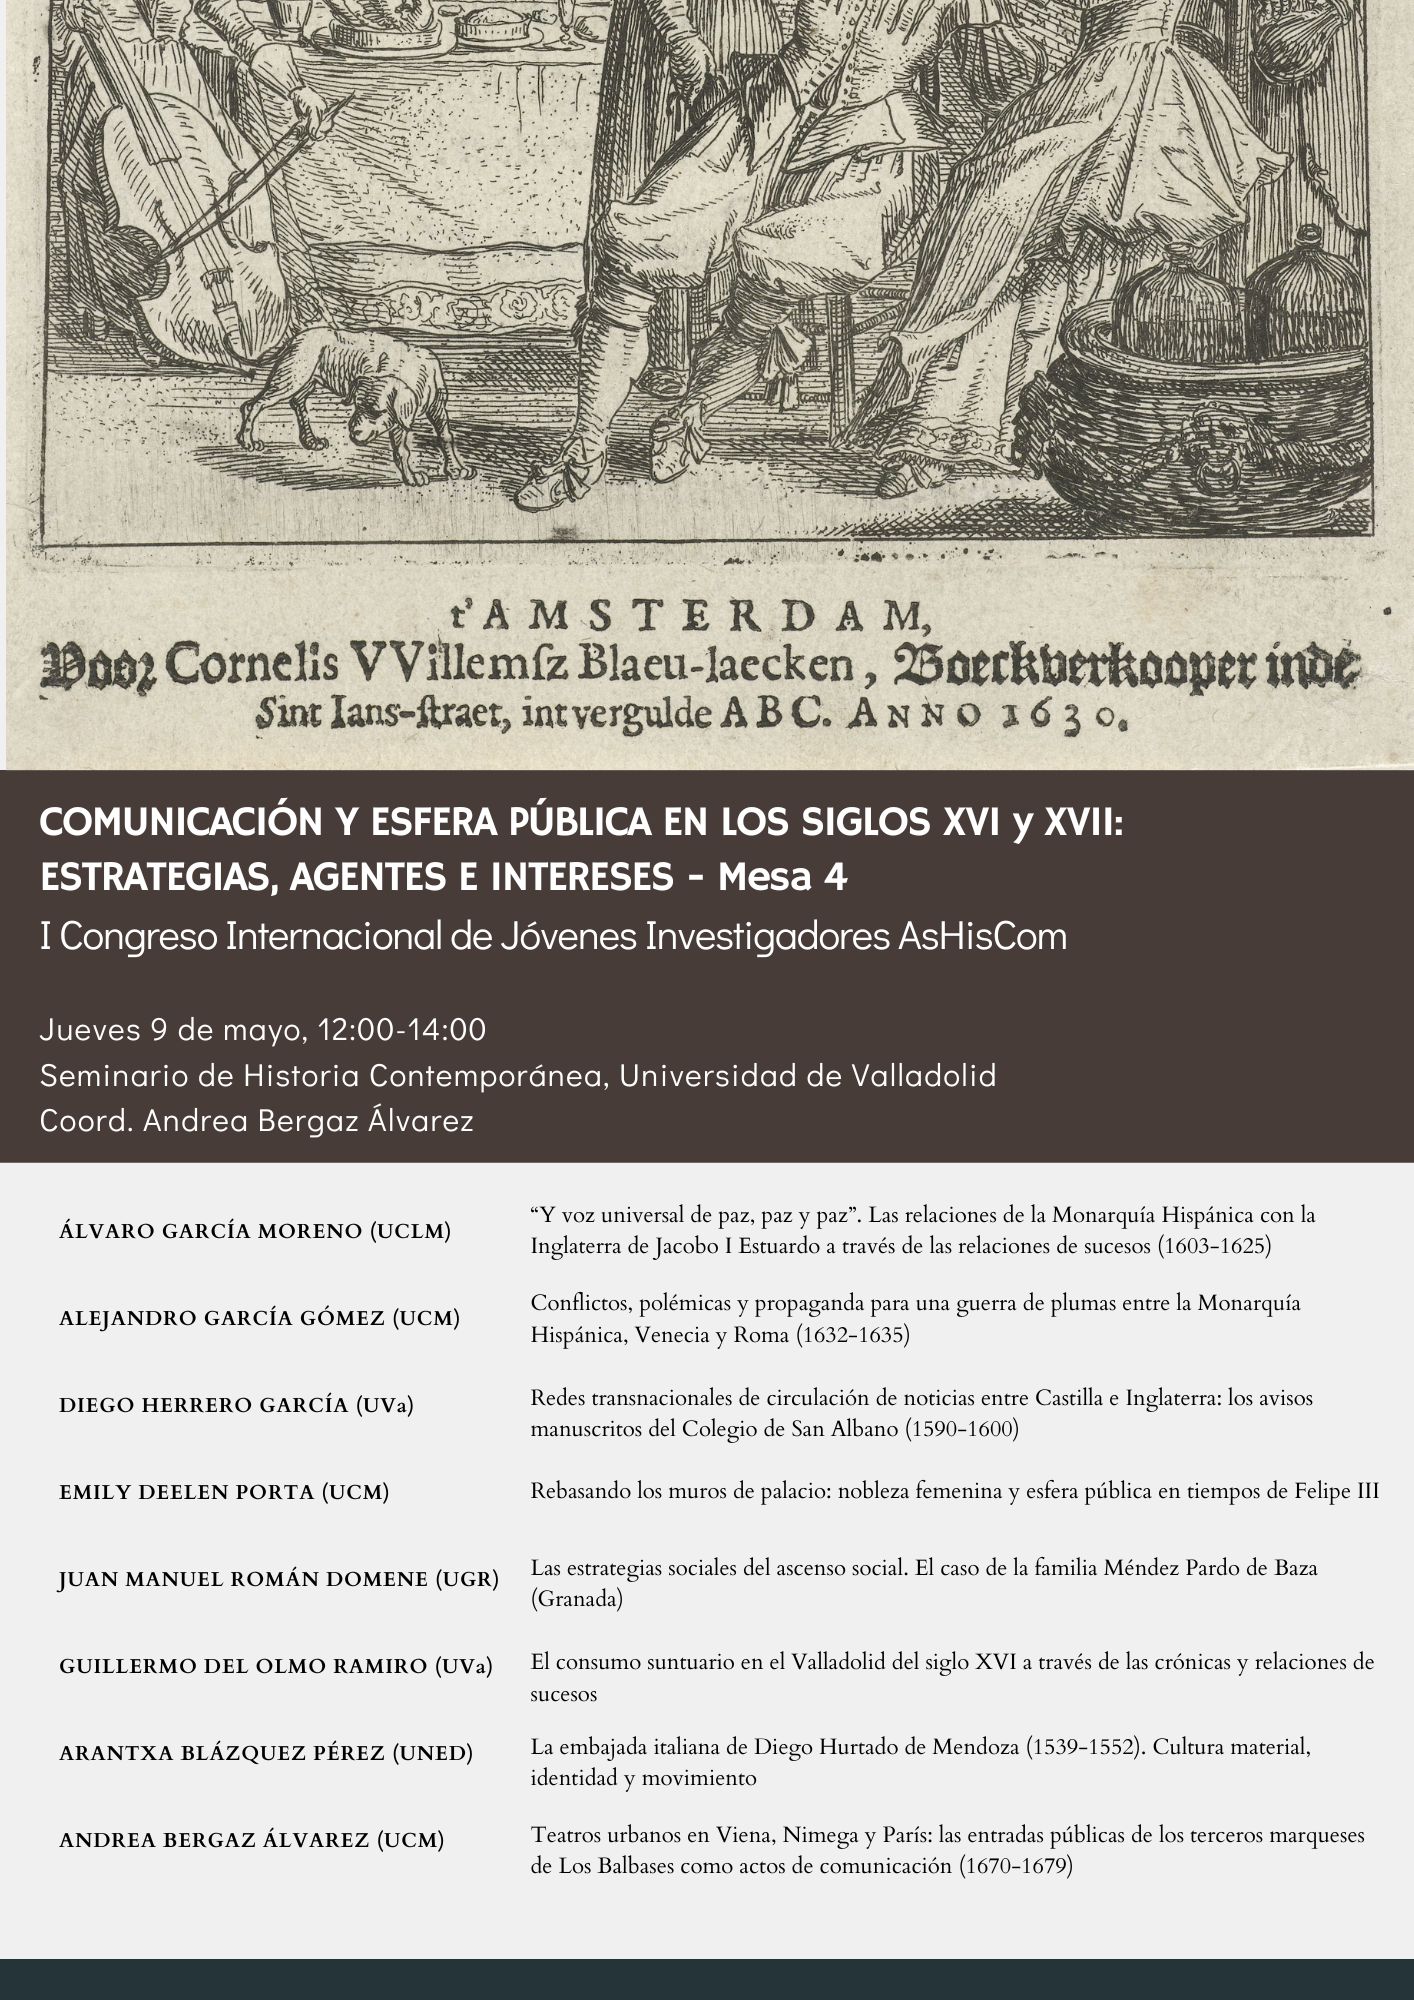 Comunicación y esfera pública en los siglos XVI y XVII: estrategias, agentes e intereses (Mesa 4 - Congreso AsHisCom)